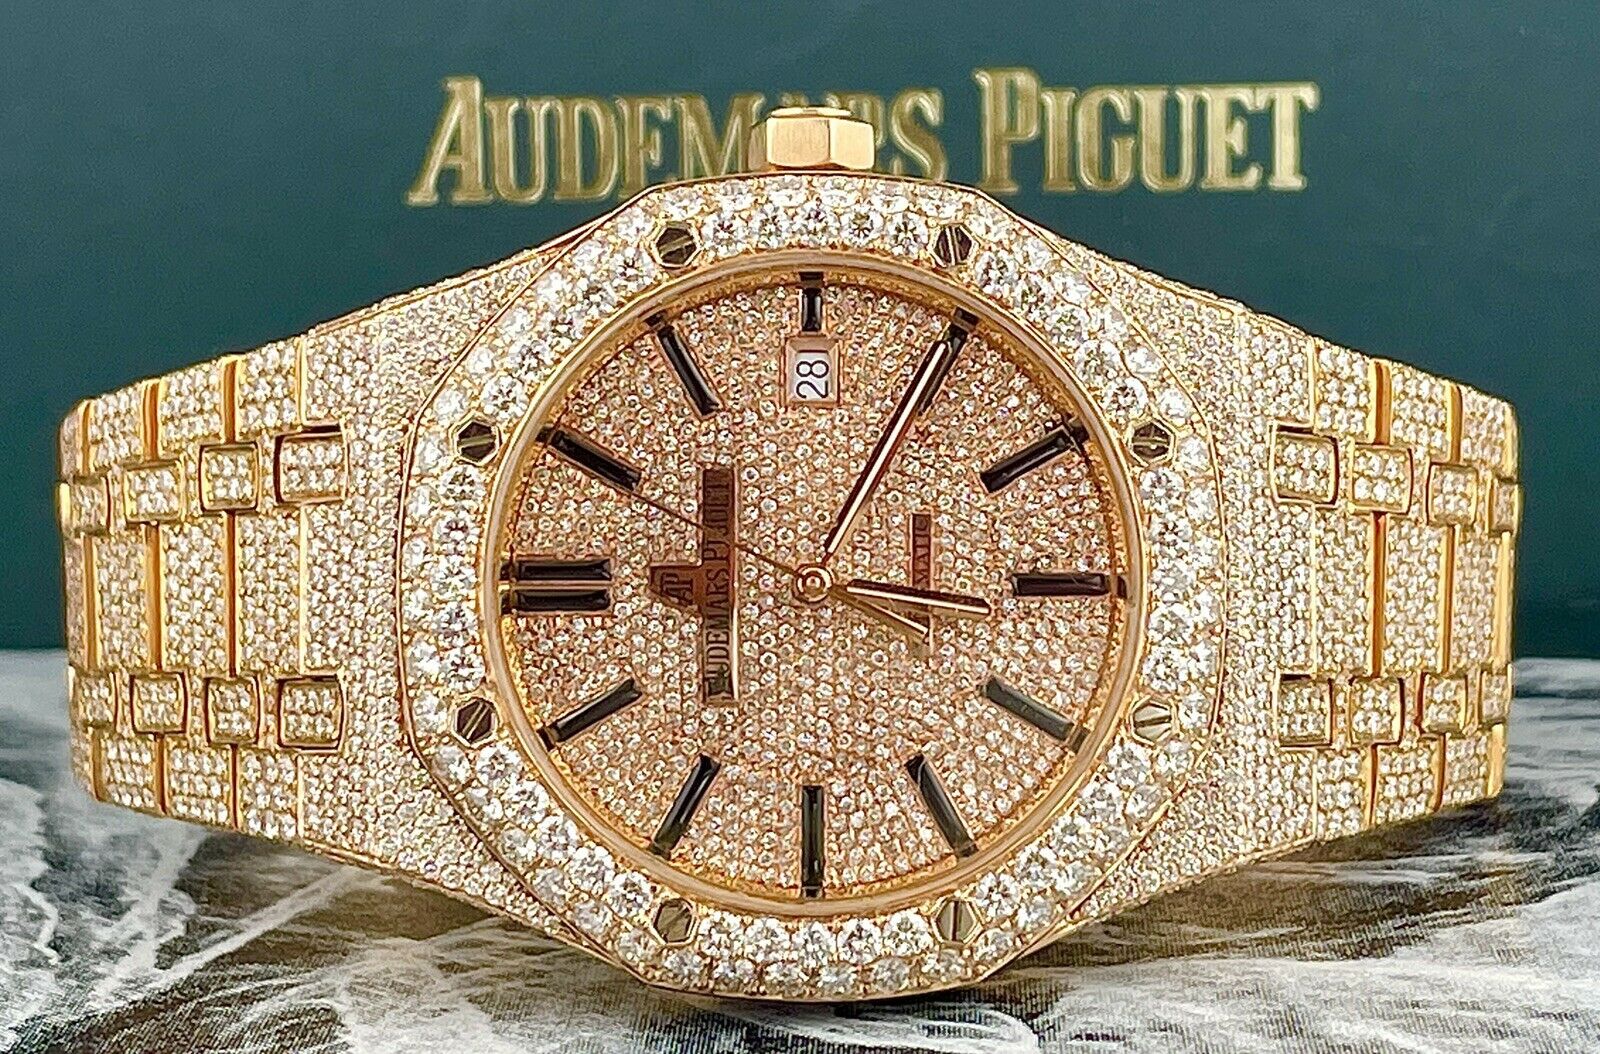 Watches — Rolex, Richard Mille, Audemar Piguet, Zenith, Patek Philippe